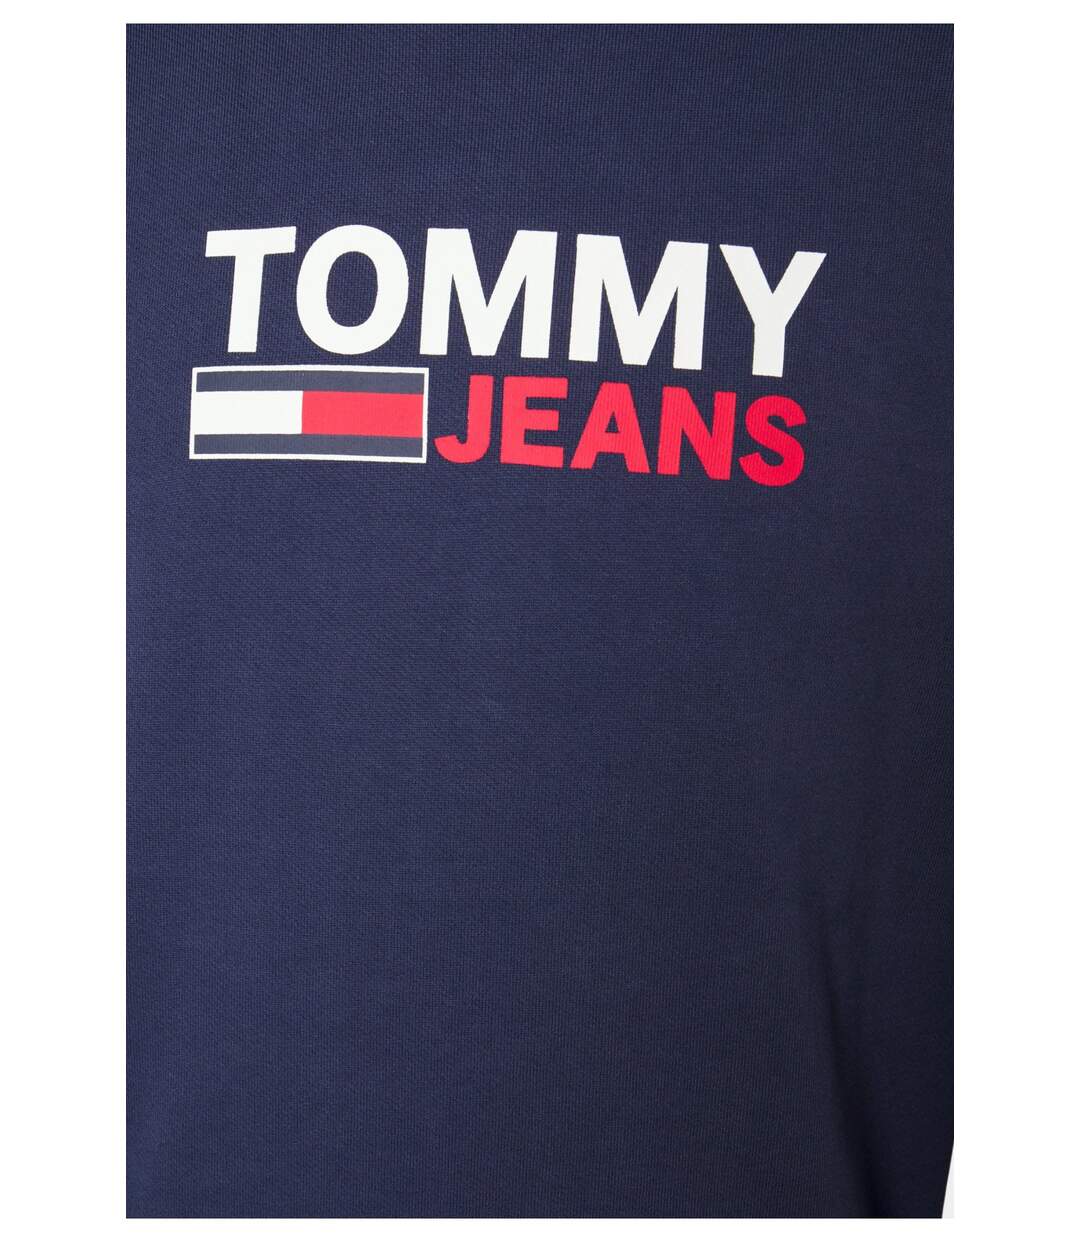 Sweat iconique en coton bio  -  Tommy Jeans - Homme